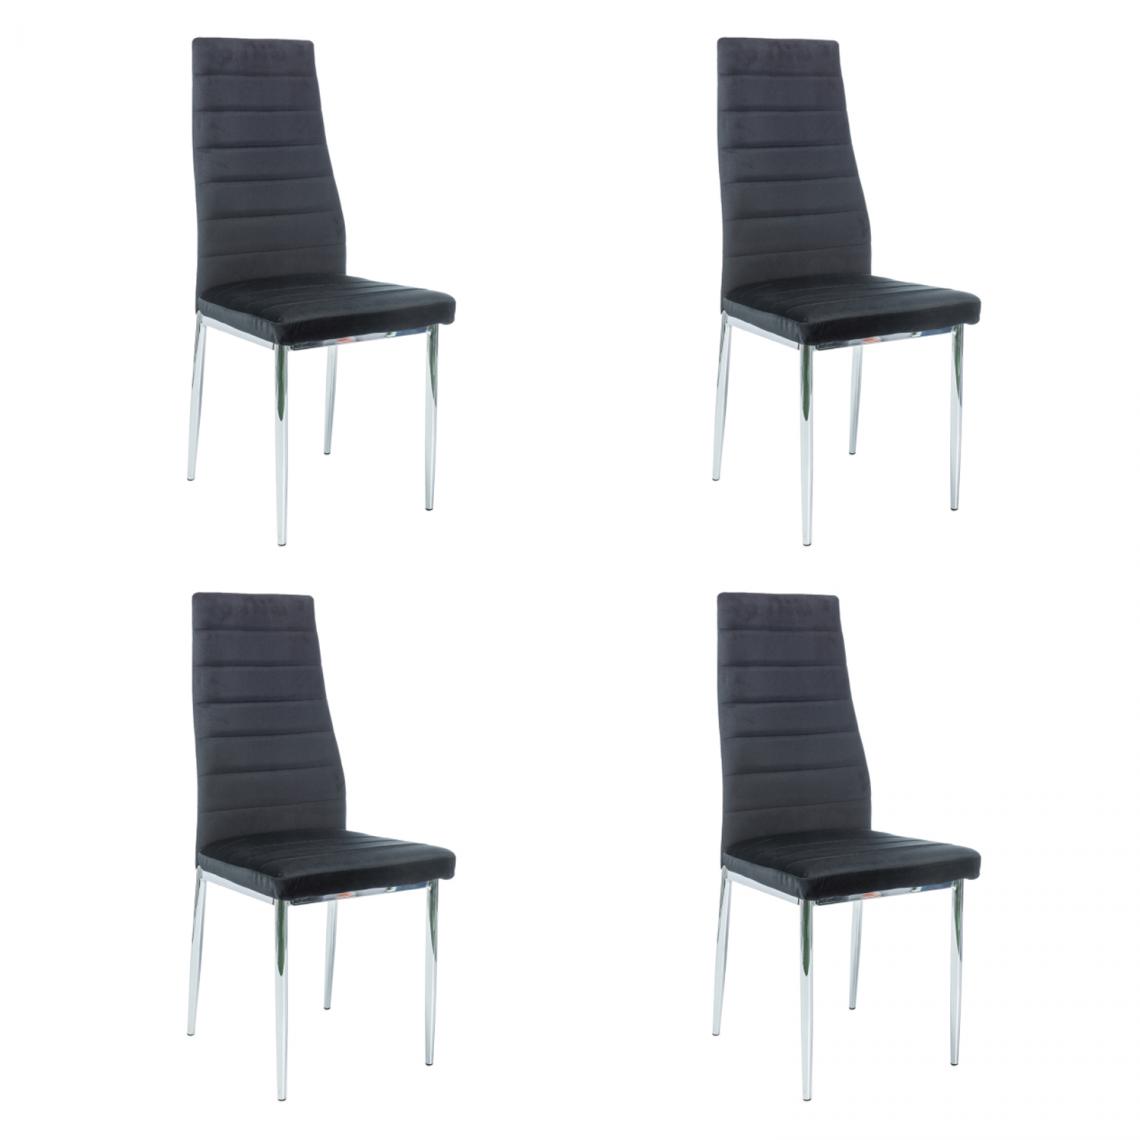 Hucoco - NOOMI - Lot de 4 chaises pour salle à manger/salon - 96x40x38 cm - Tissu velouté - Style glamour - Noir - Chaises